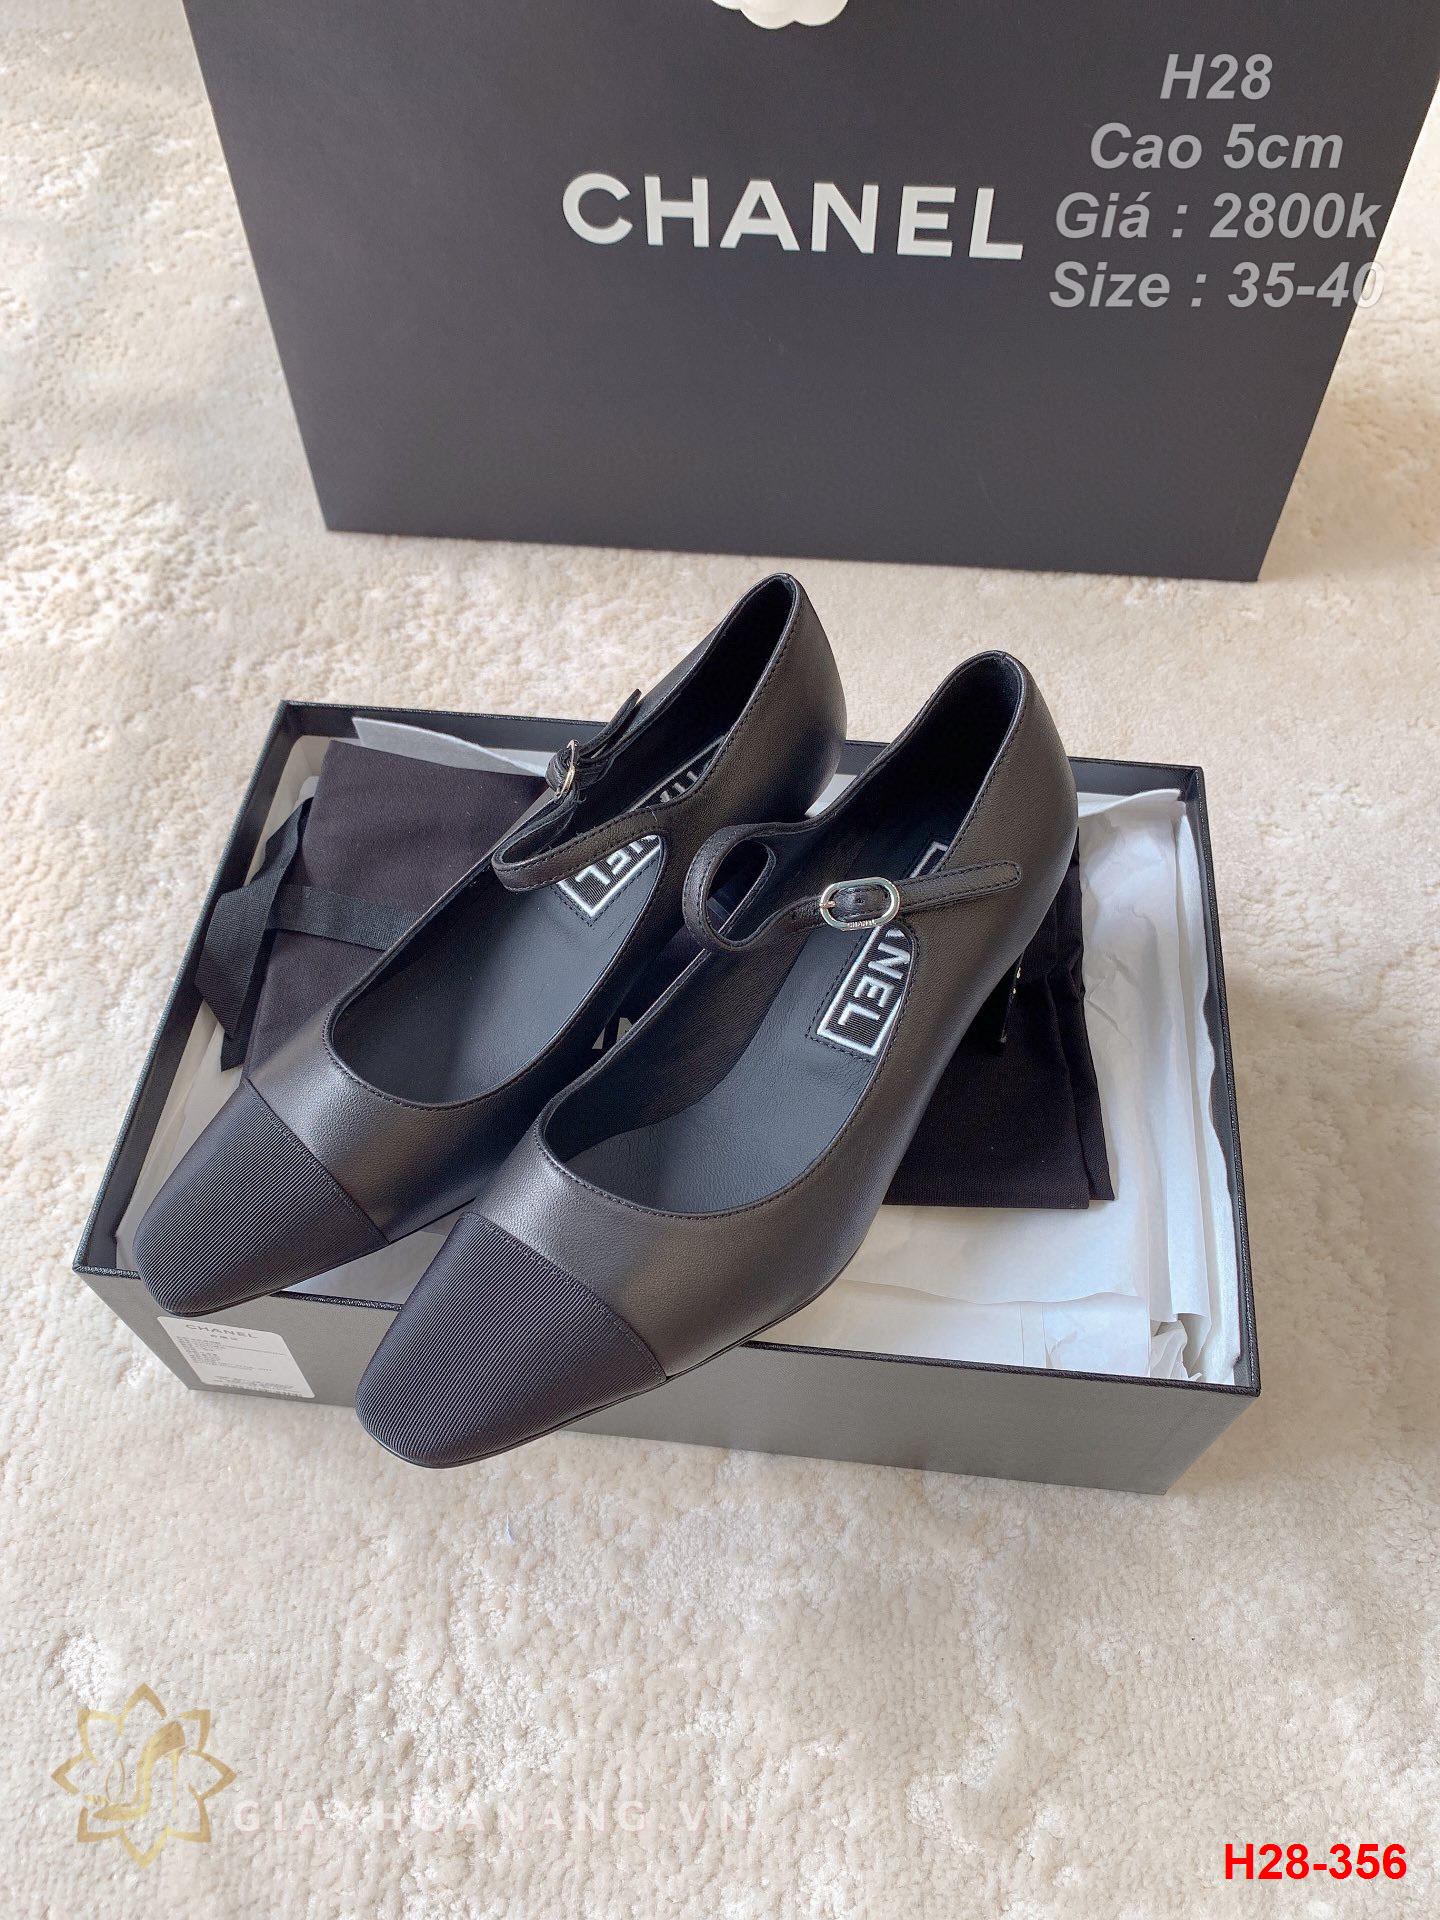 H28-356 Chanel giày cao gót 5cm siêu cấp